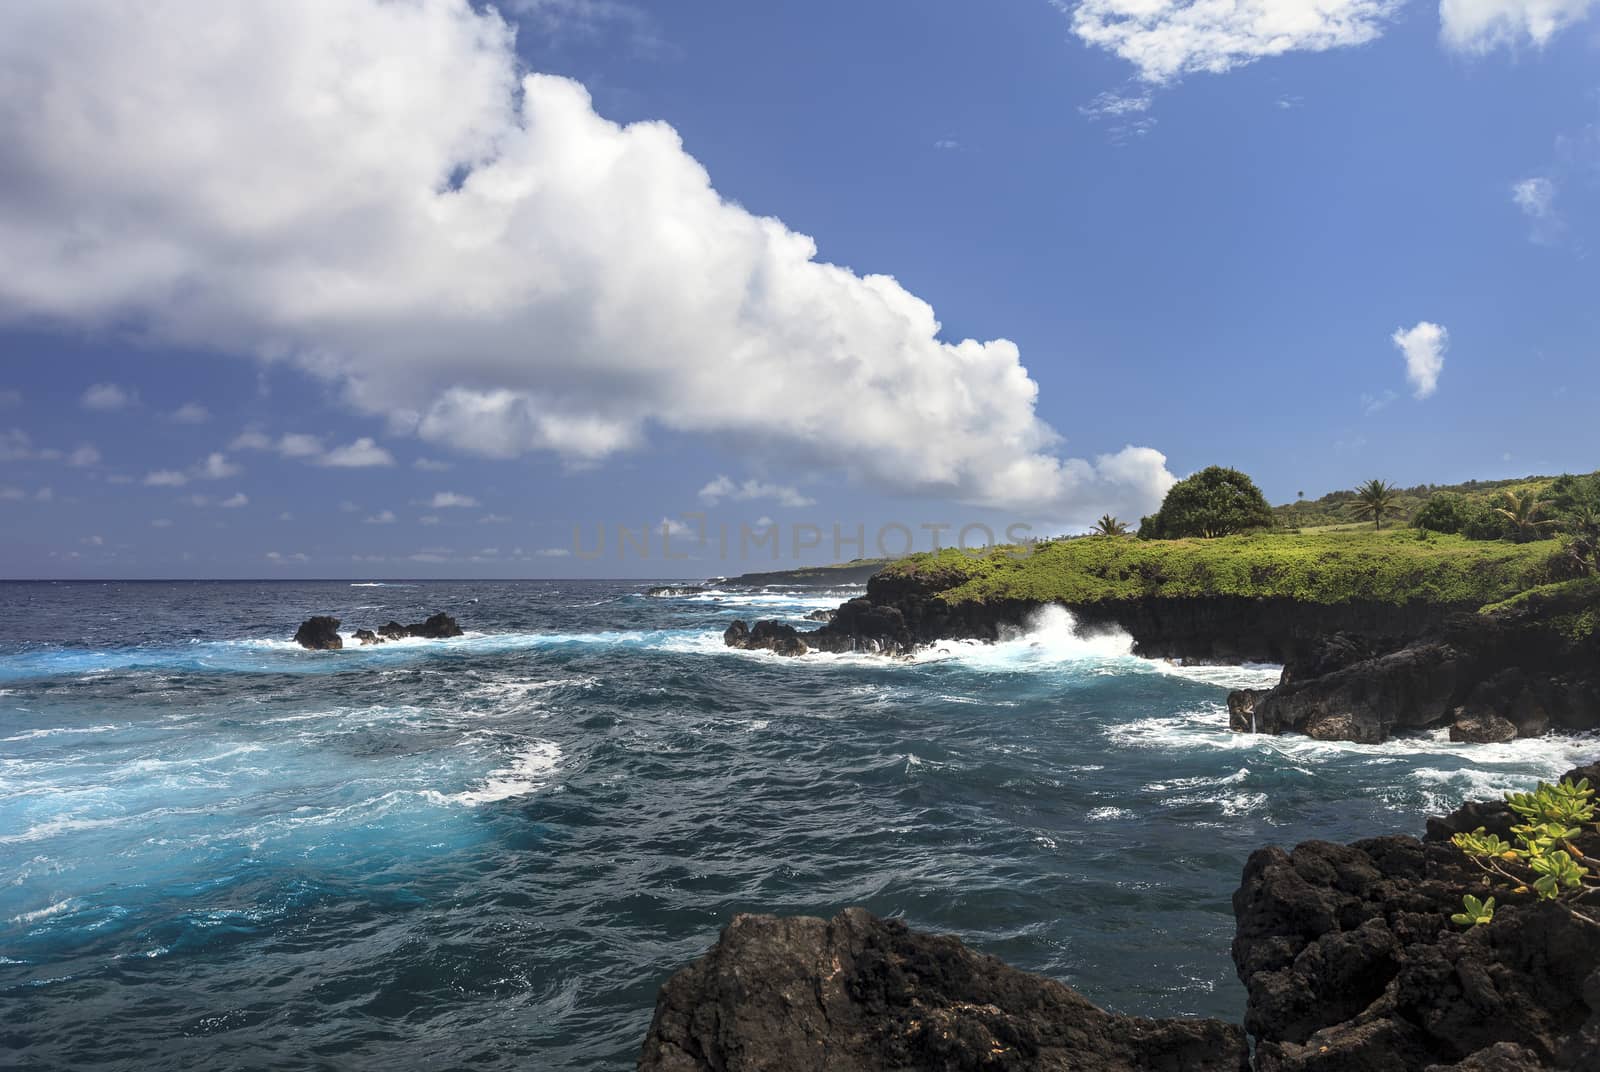 Hana, Maui 2 by mmarfell